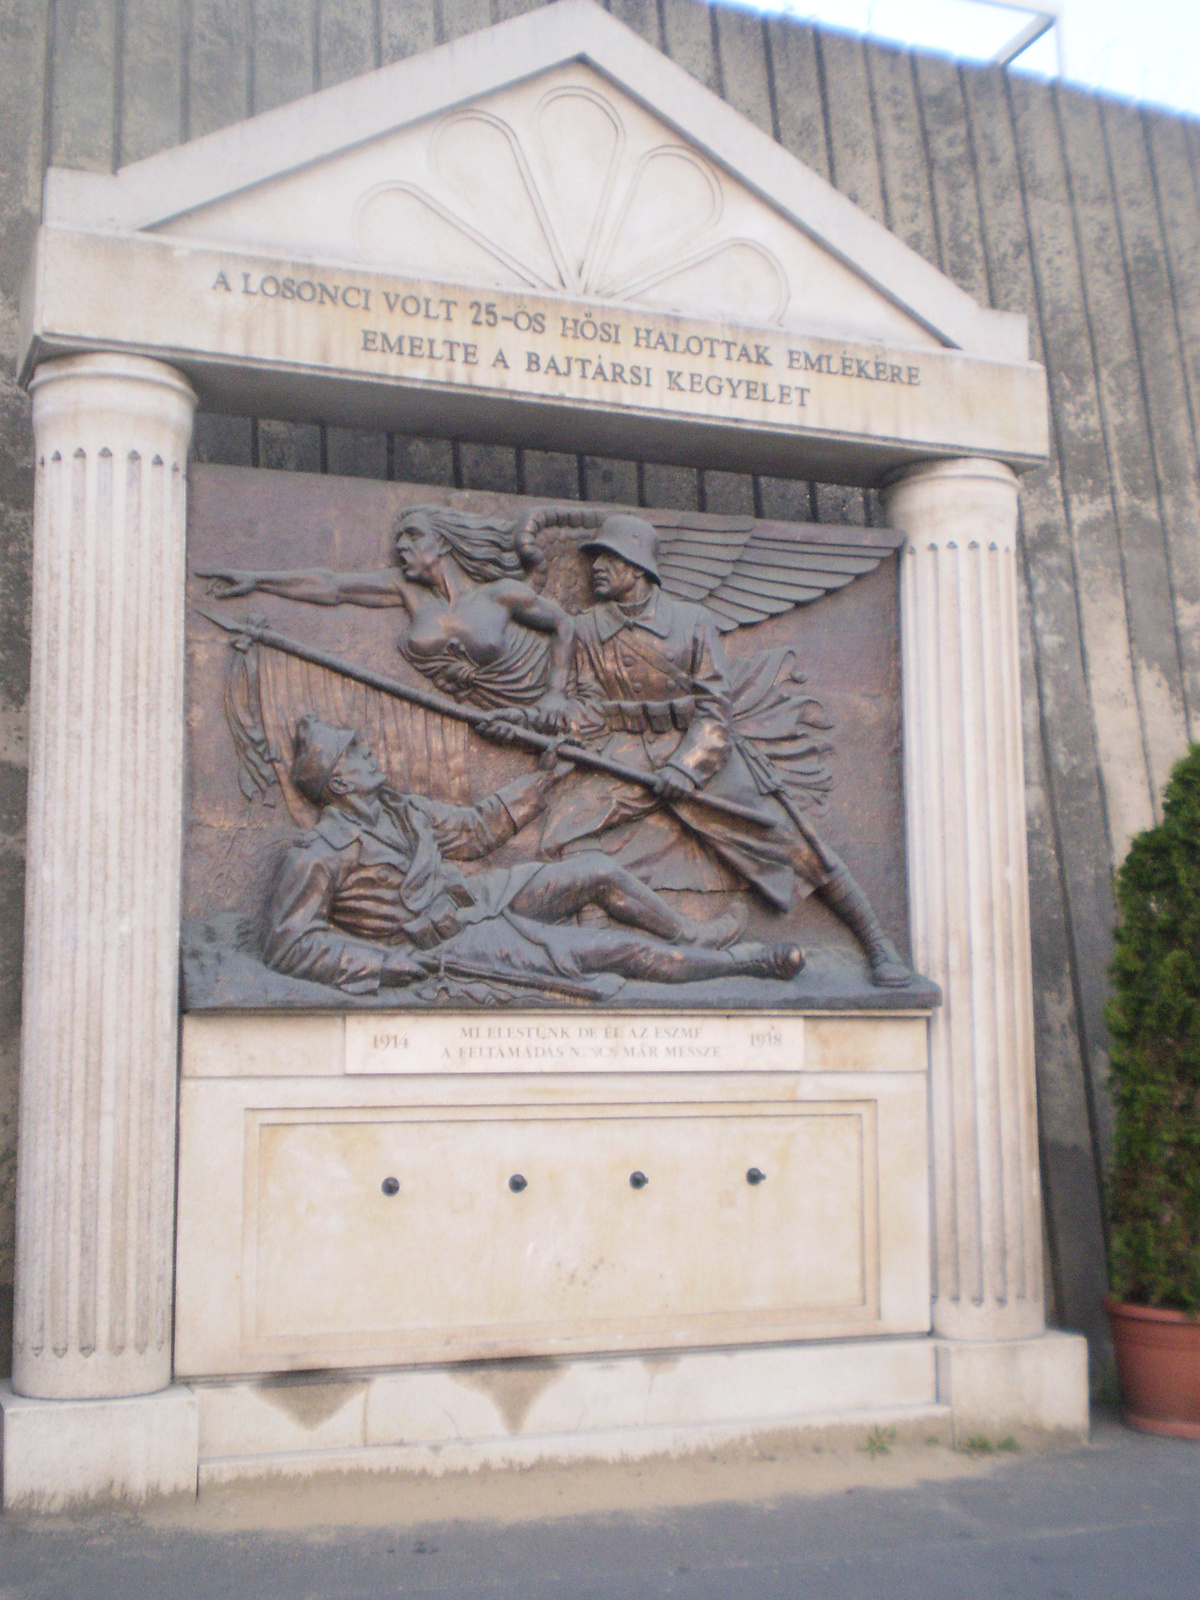 31: Losonci 25-ös hősi halottak v. a 25. gyalogezred emlékműve